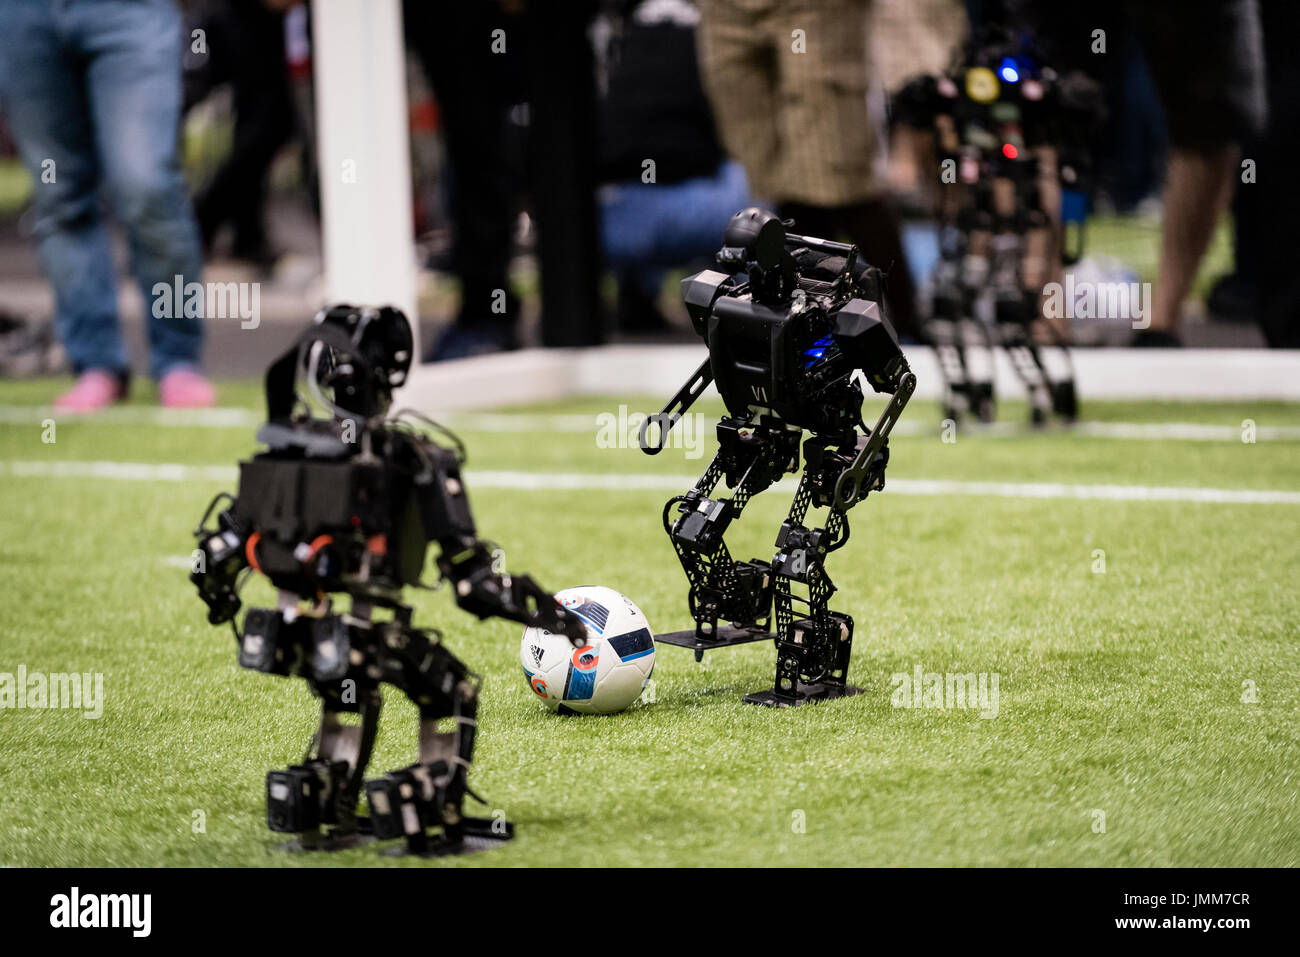 Турнир роботов по футболу. Робот "футболист". Спортивный робот. Роботы играющие в футбол. Футбол робототехника.